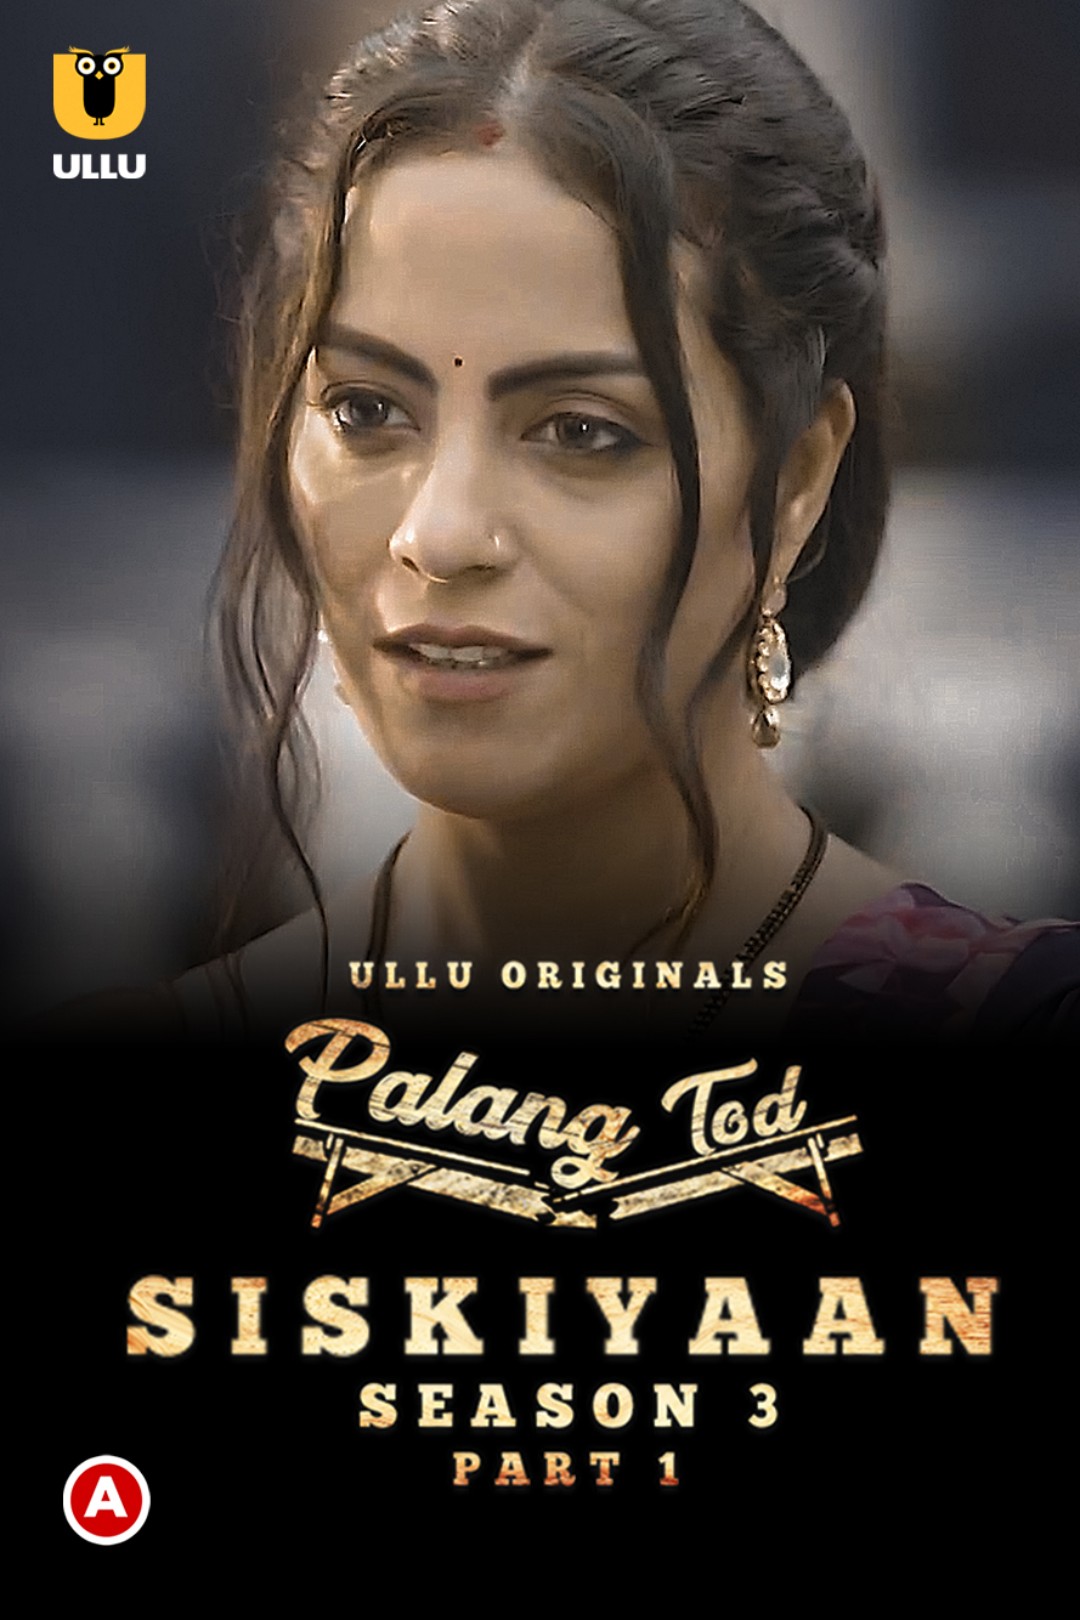 18+ Palang Tod (Siskiyaan S03) Part 1 2022 Hindi Ullu Web Series 1080p HDRip 1.3GB Download